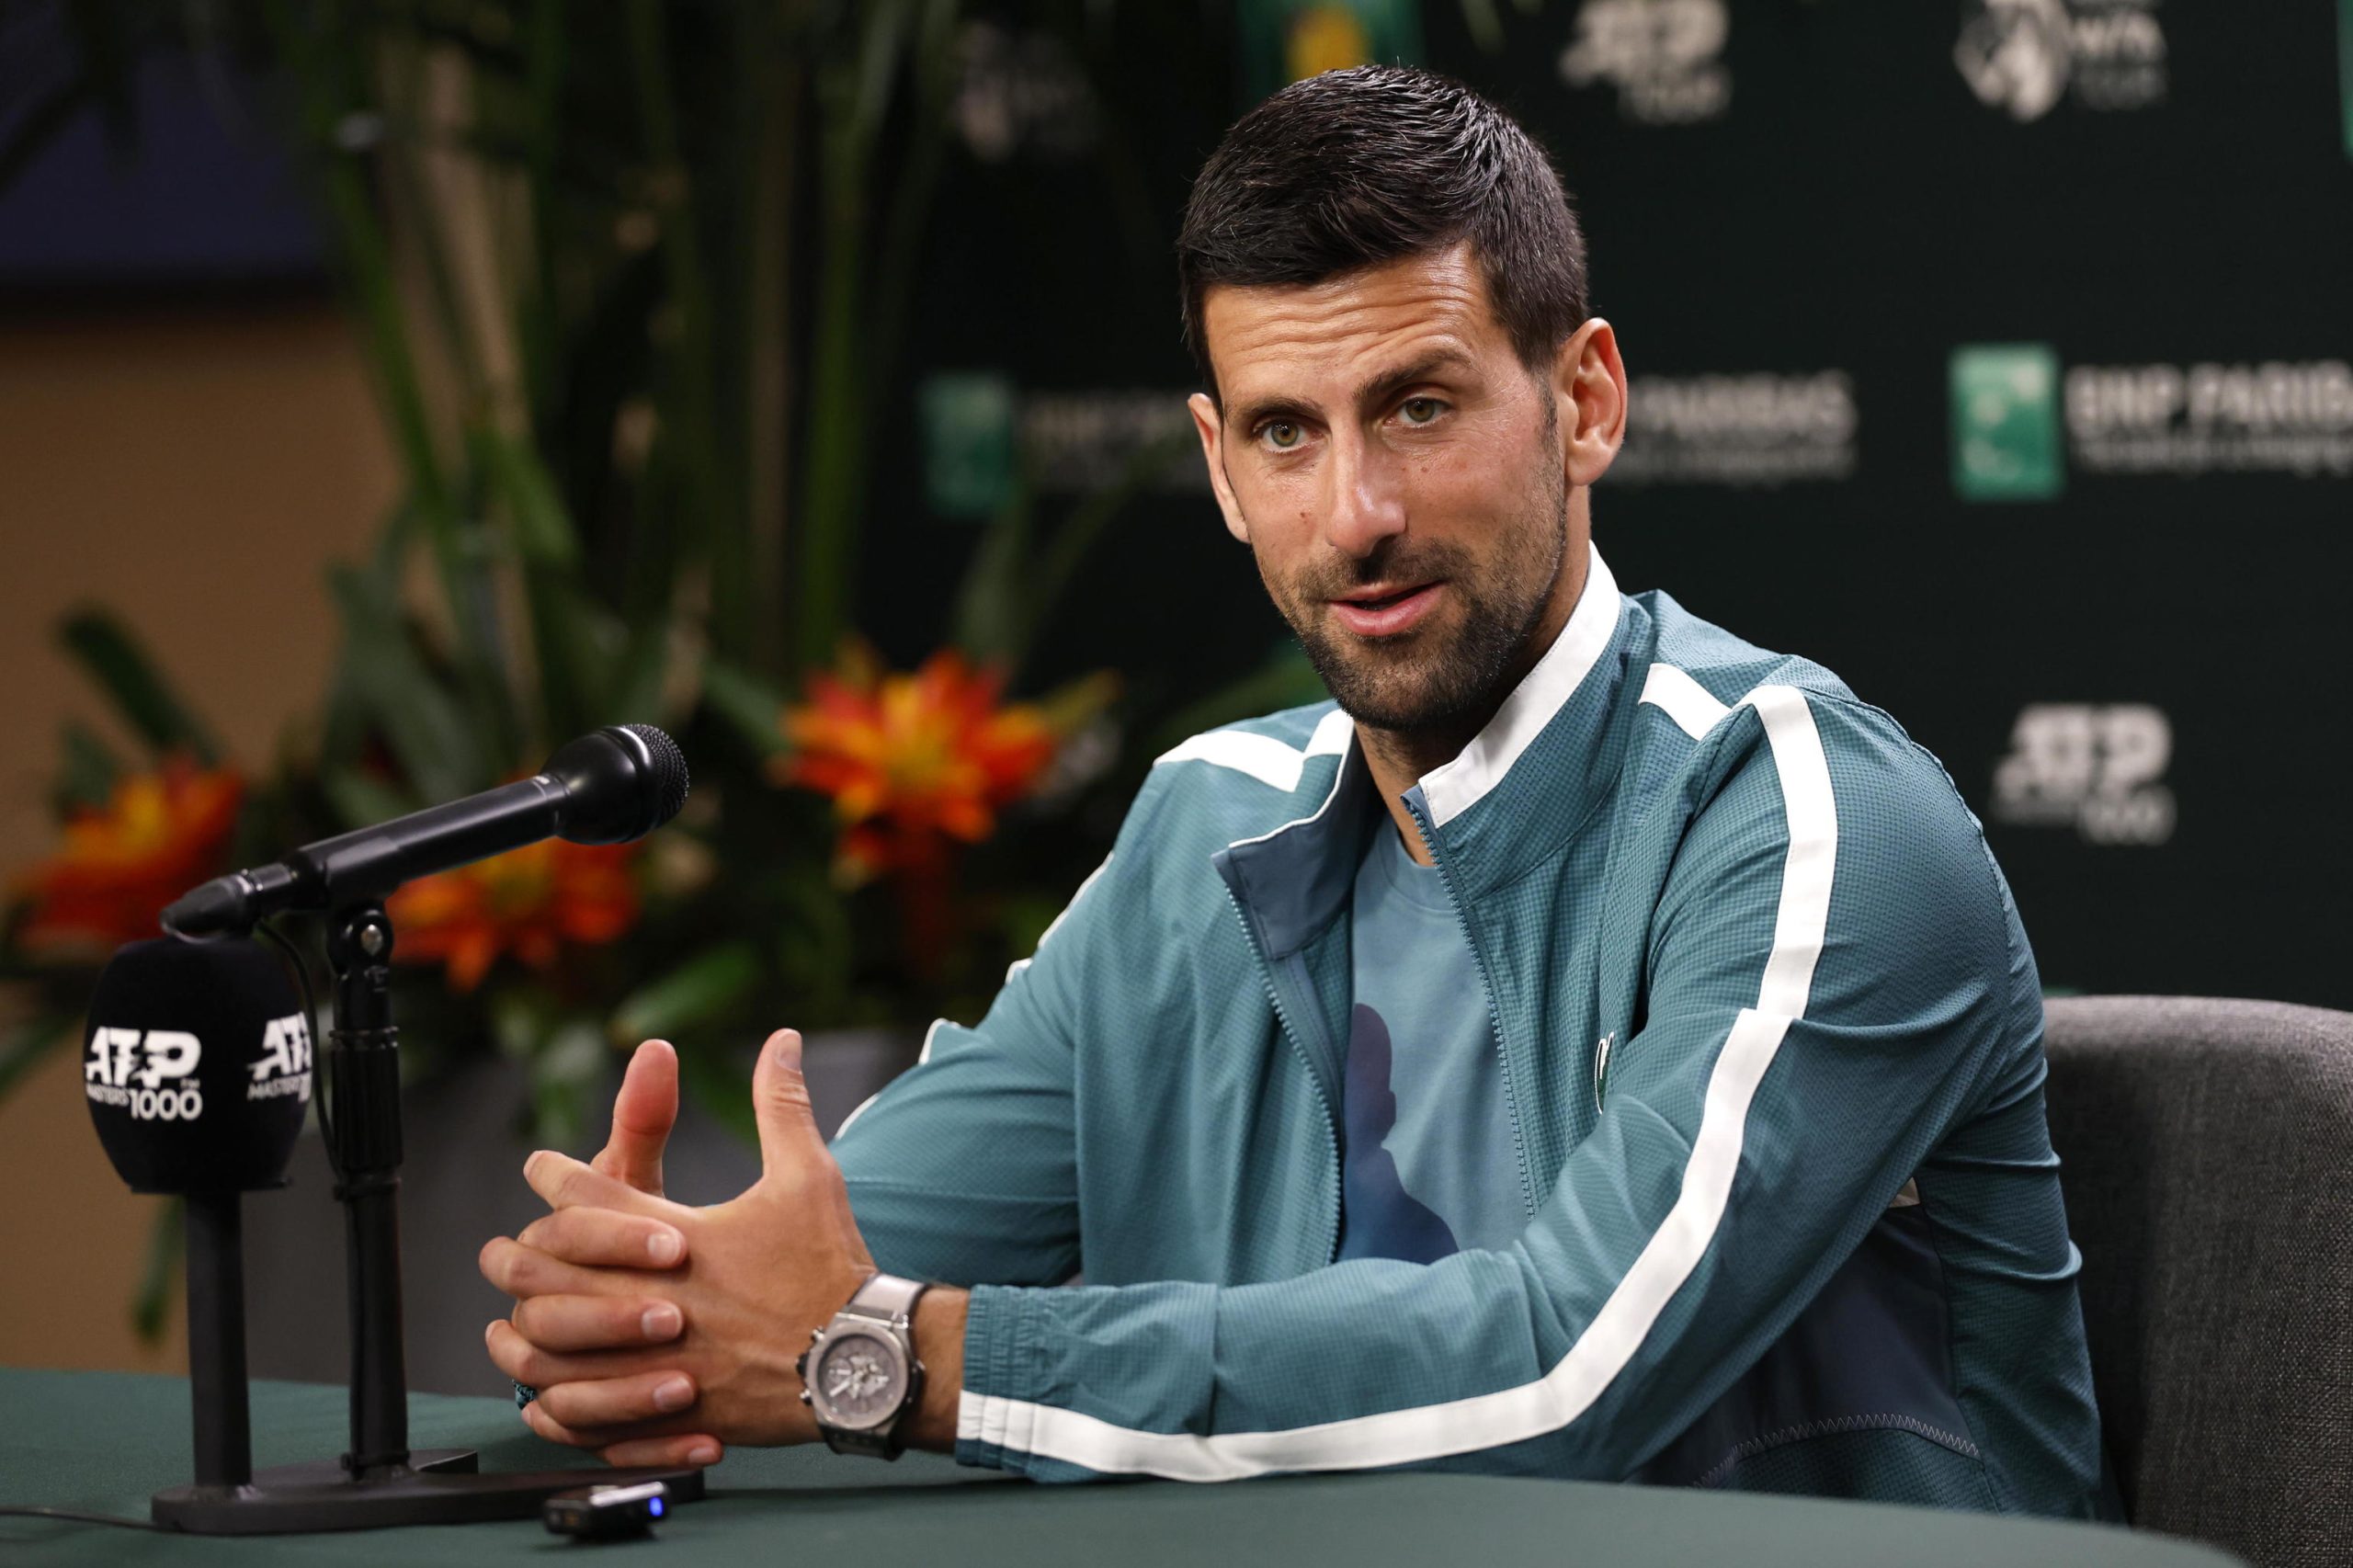 ¿Qué le ocurre a Novak Djokovic? "Ha perdido la esencia de su juego"